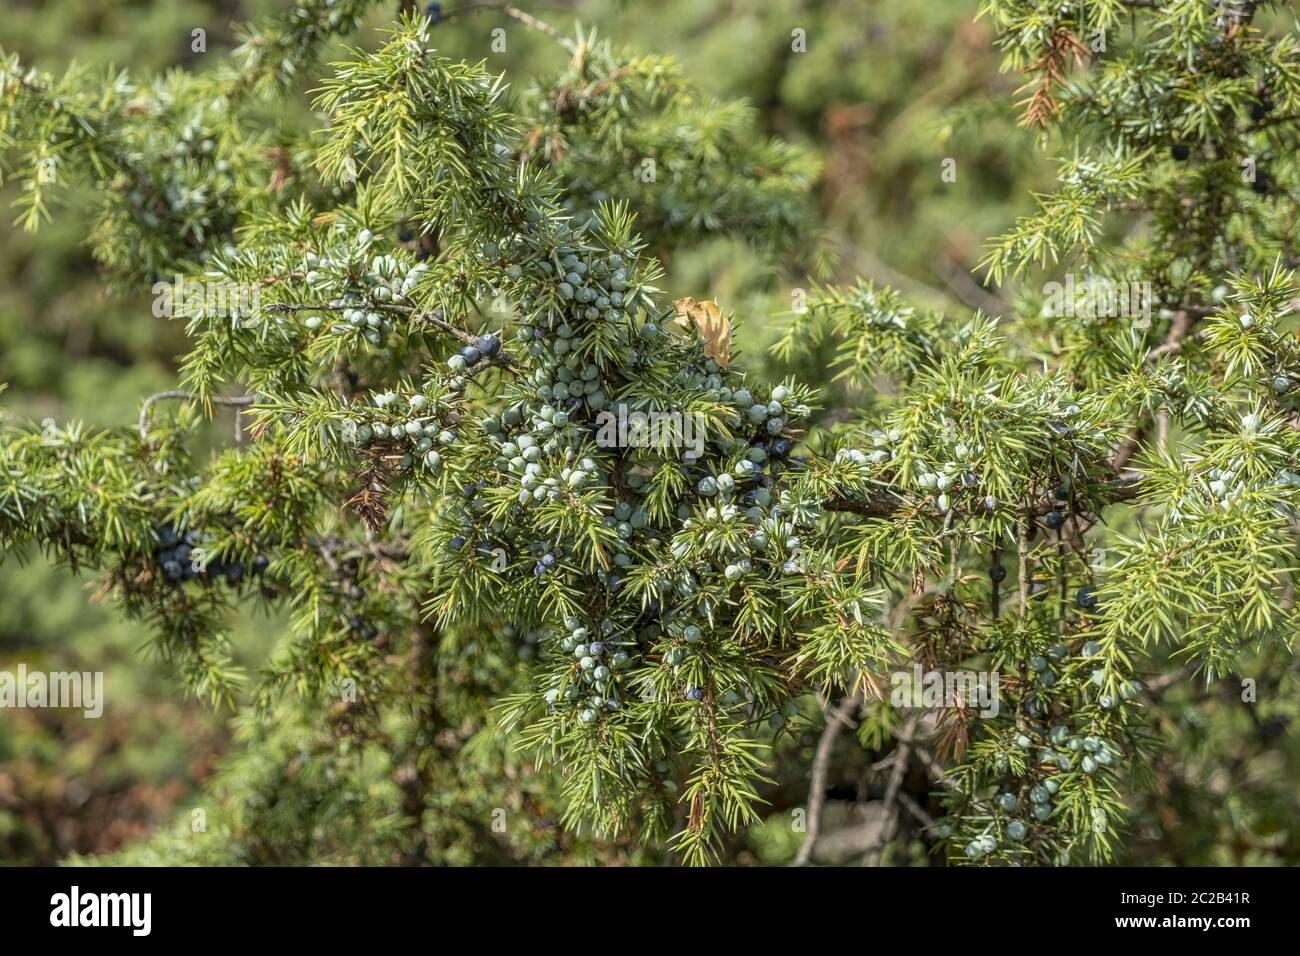 Common juniper (Juniperus communis) Stock Photo